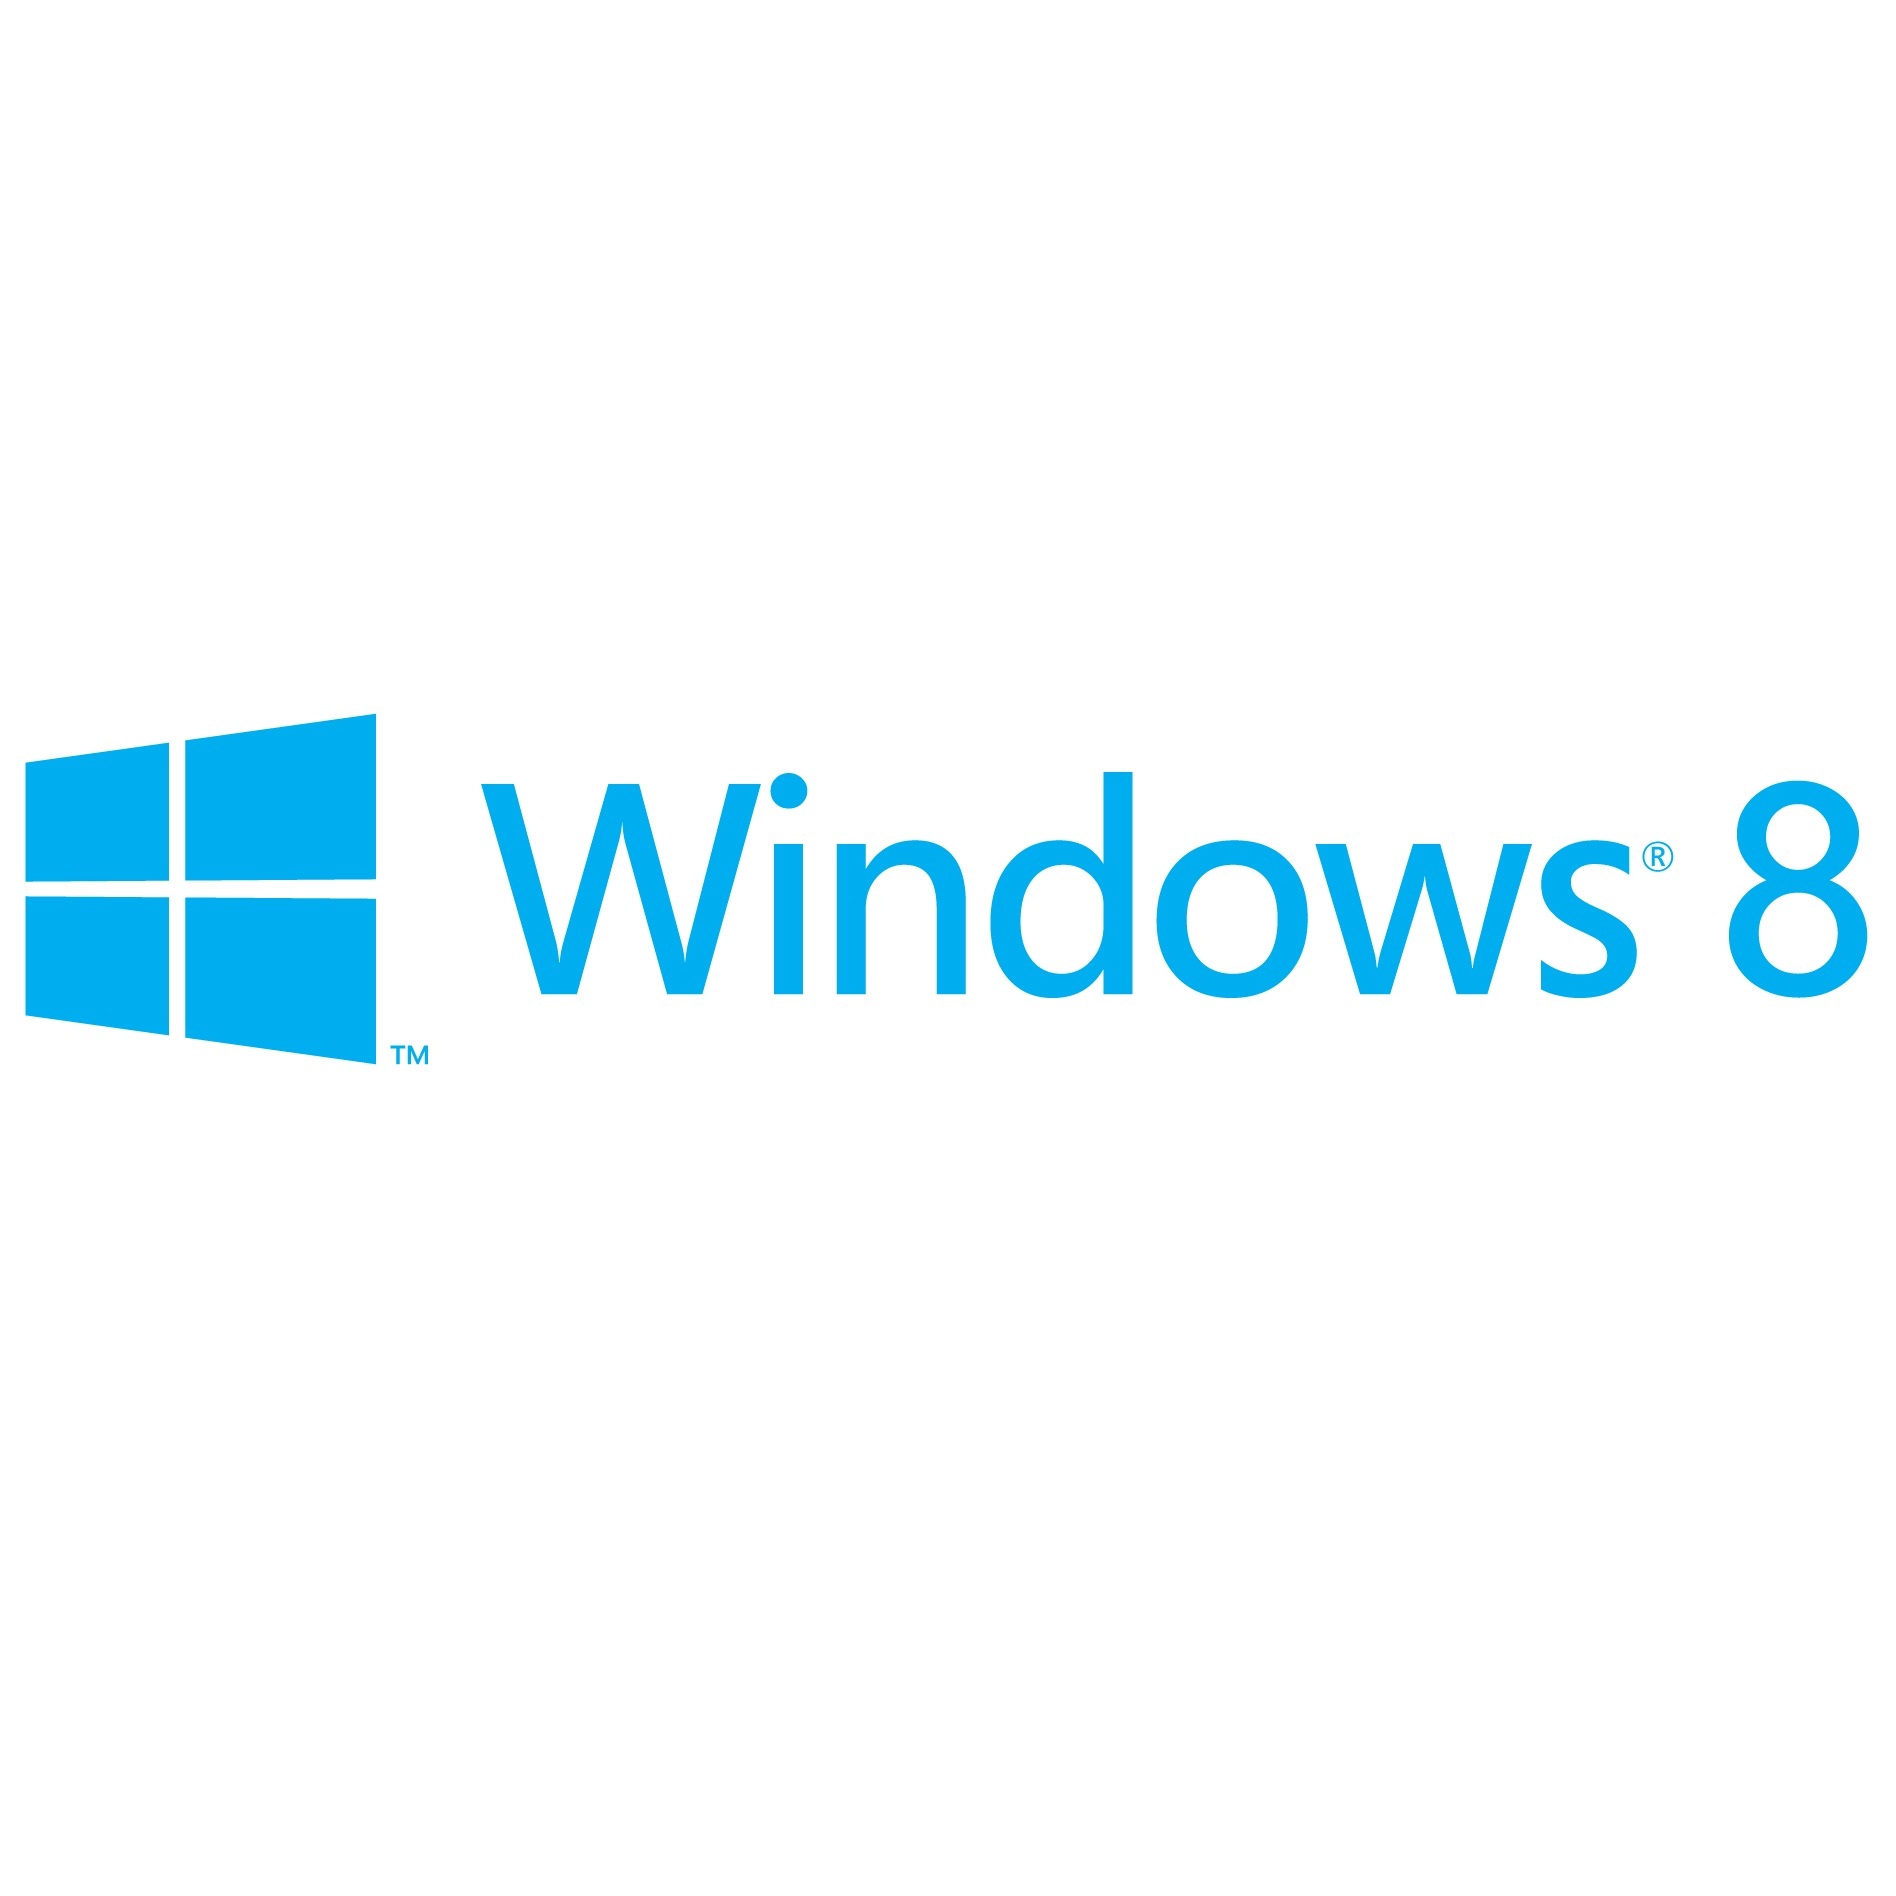 Windows 8 се връща към интерфейса на XP?